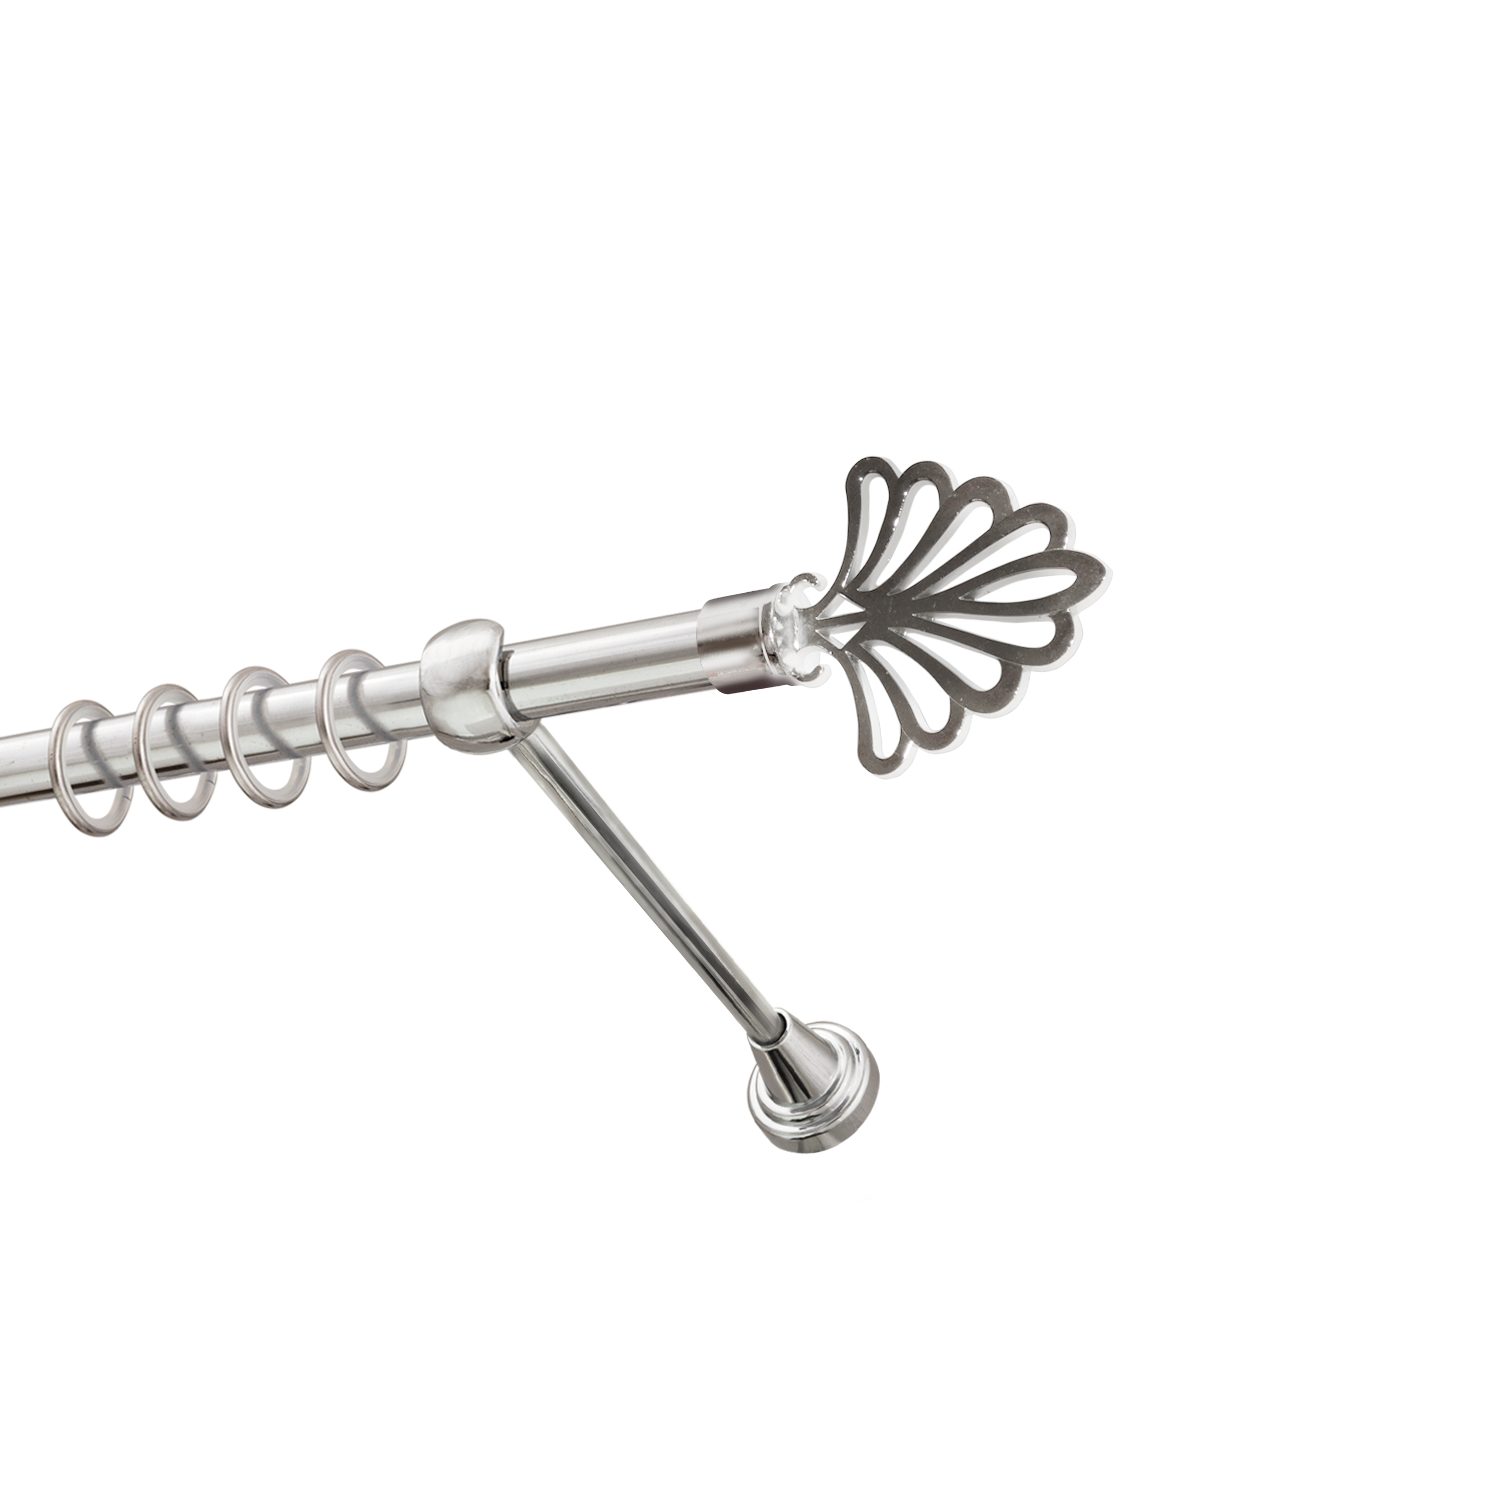 Металлический карниз для штор Бутик, однорядный 16 мм, серебро, гладкая штанга, длина 180 см - фото Wikidecor.ru